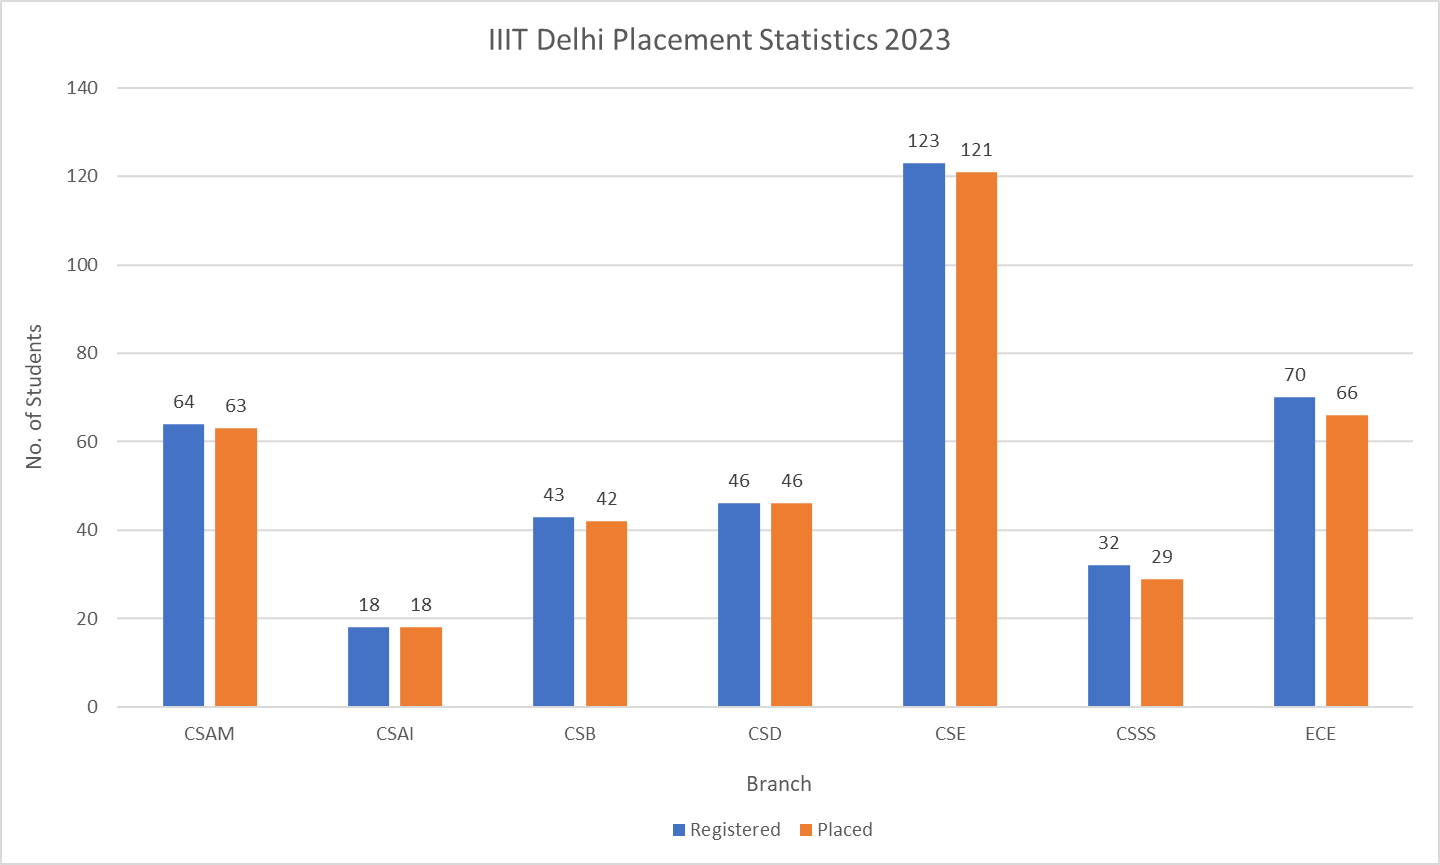 IIIT Delhi Placement Statistics 2023